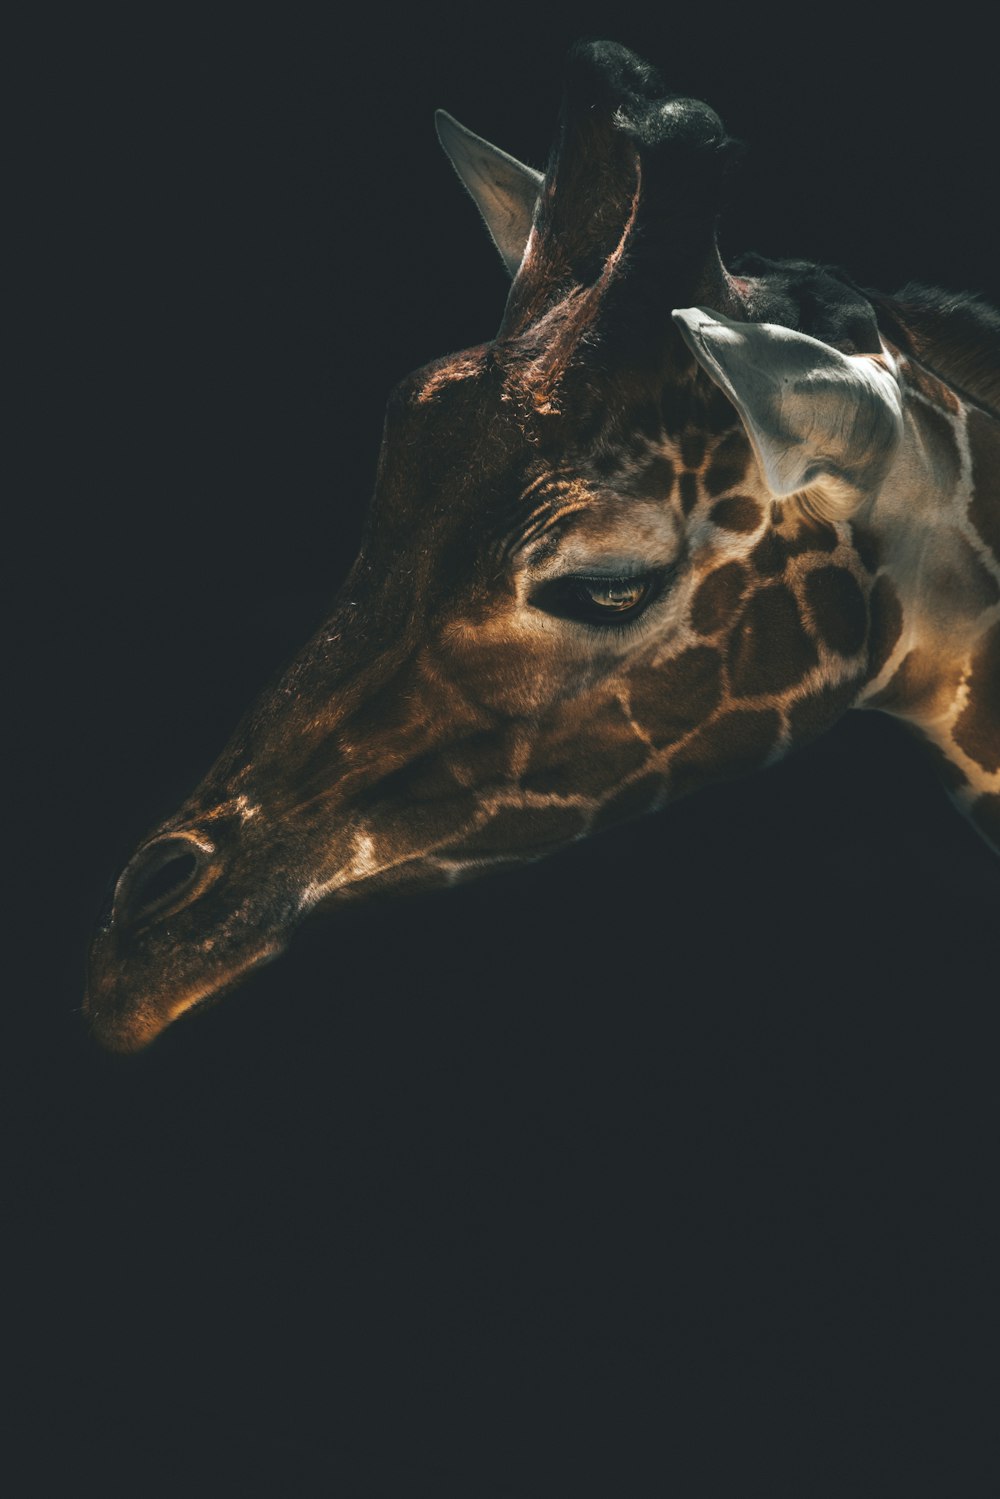 cabeça de girafa marrom com fundo preto